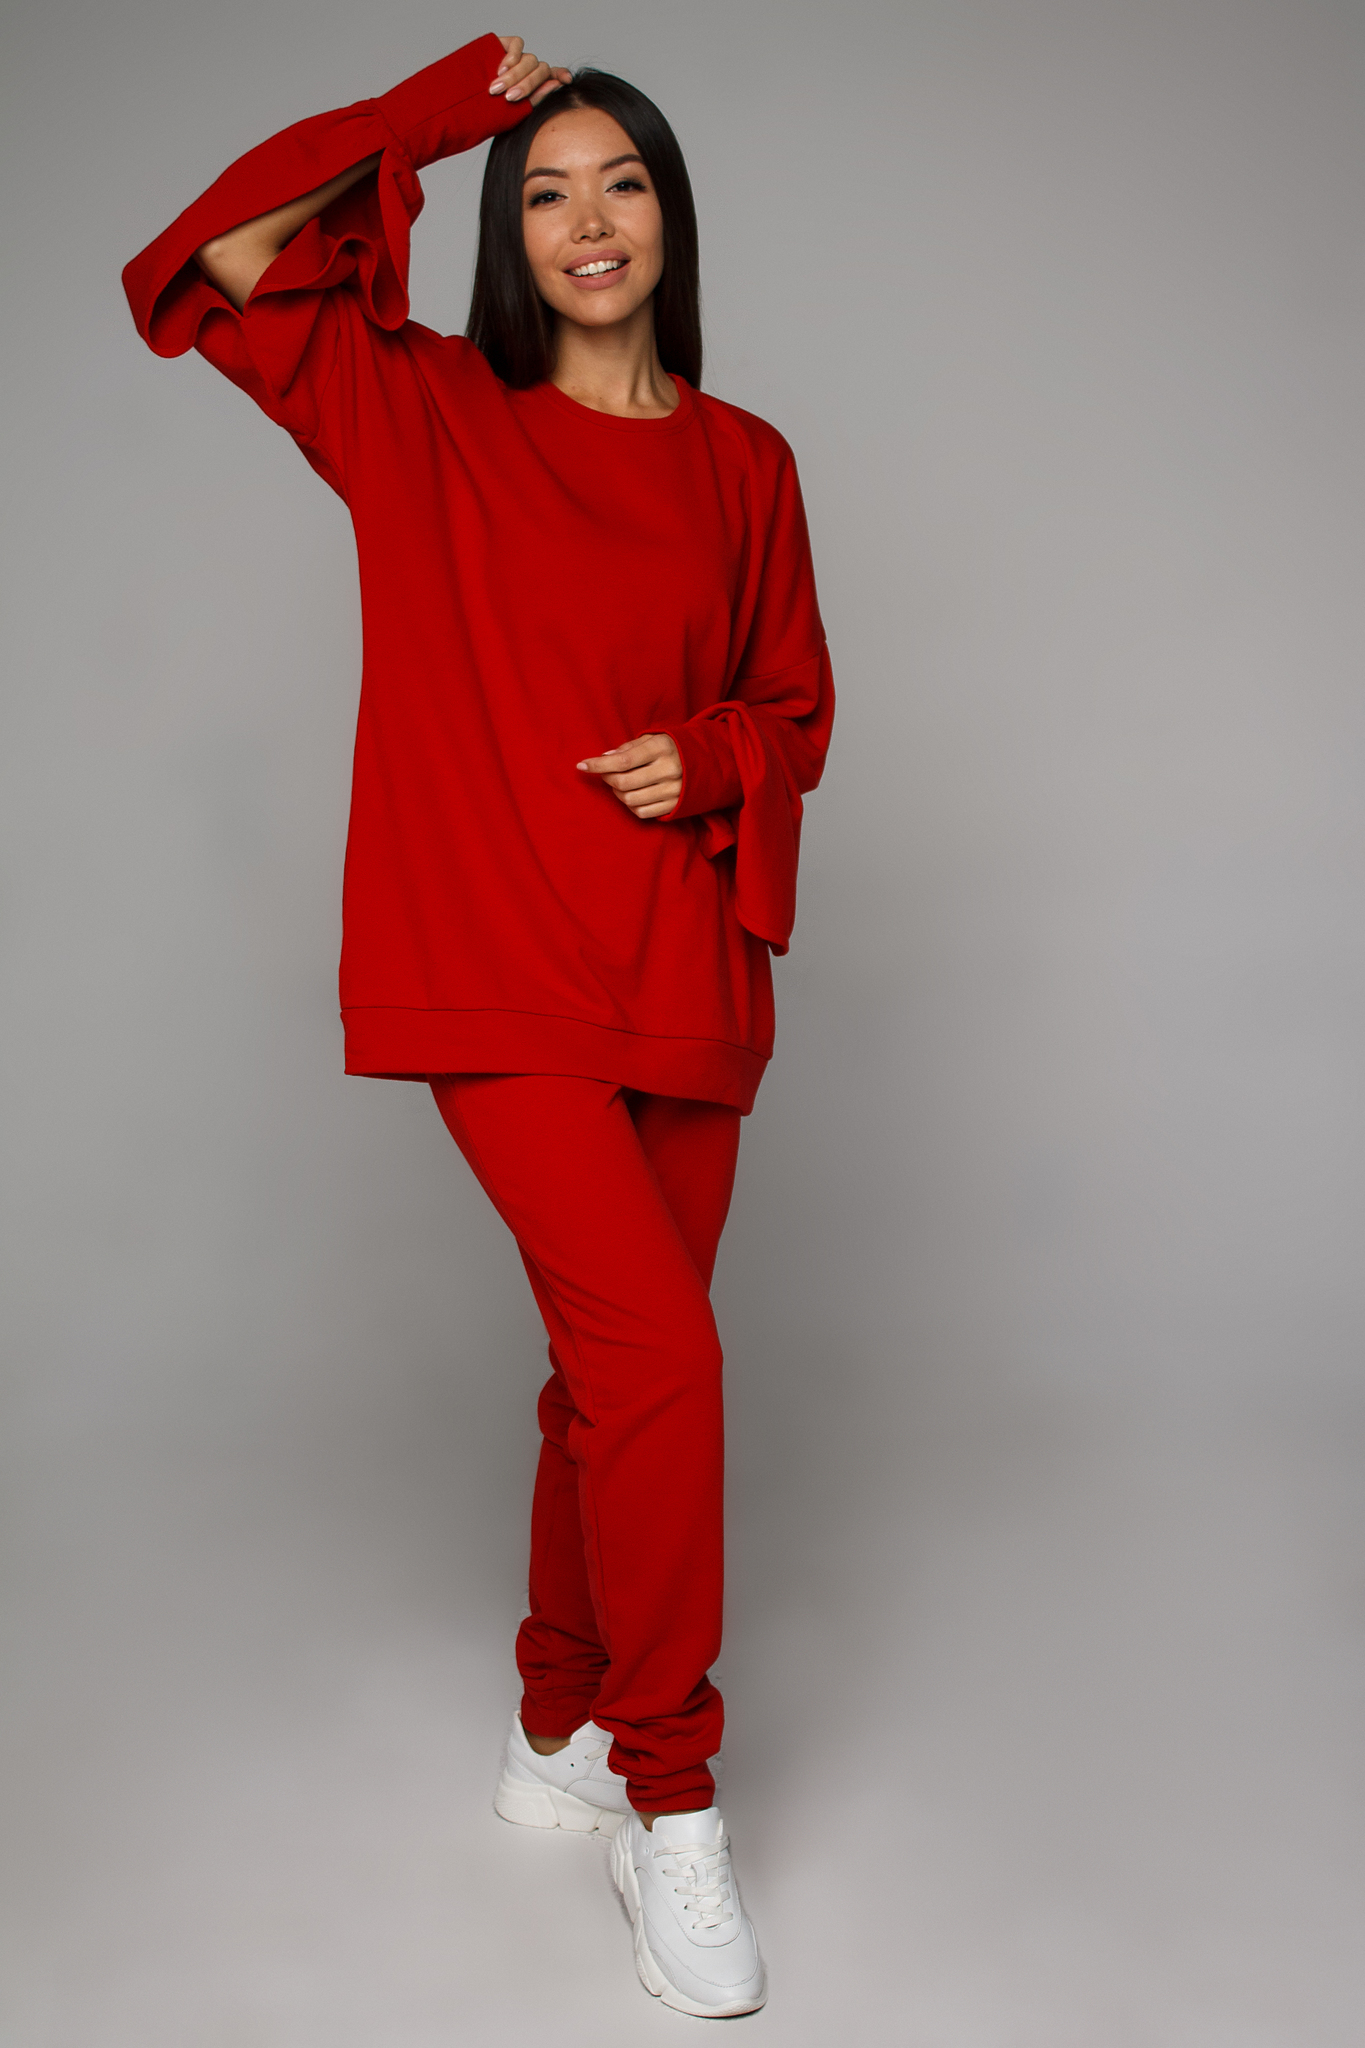 Cвитшот трикотажный красный YOS от украинского бренда Your Own Style